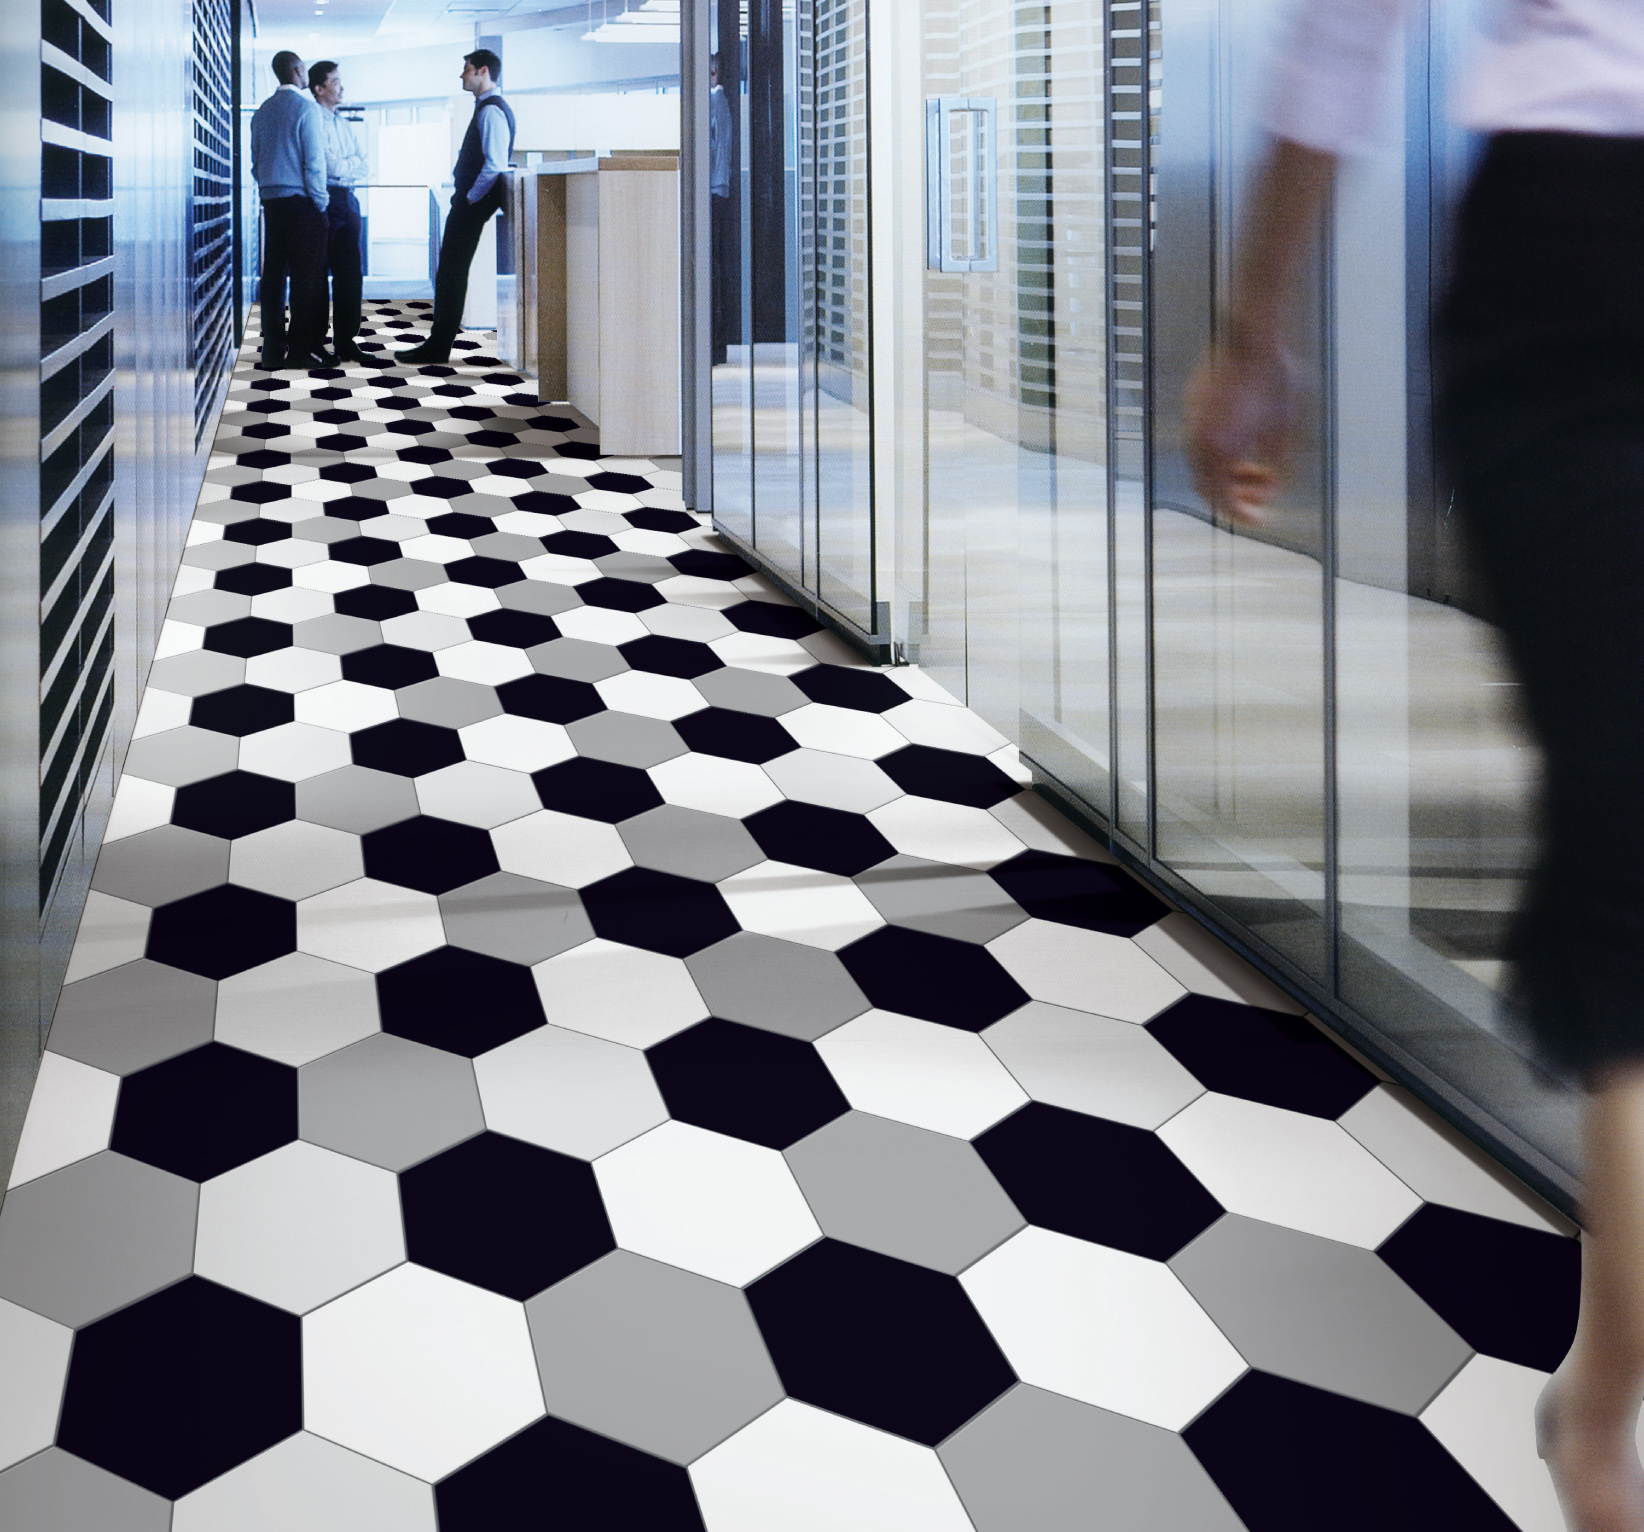 Aisle Hexagonal Tile Flooring 